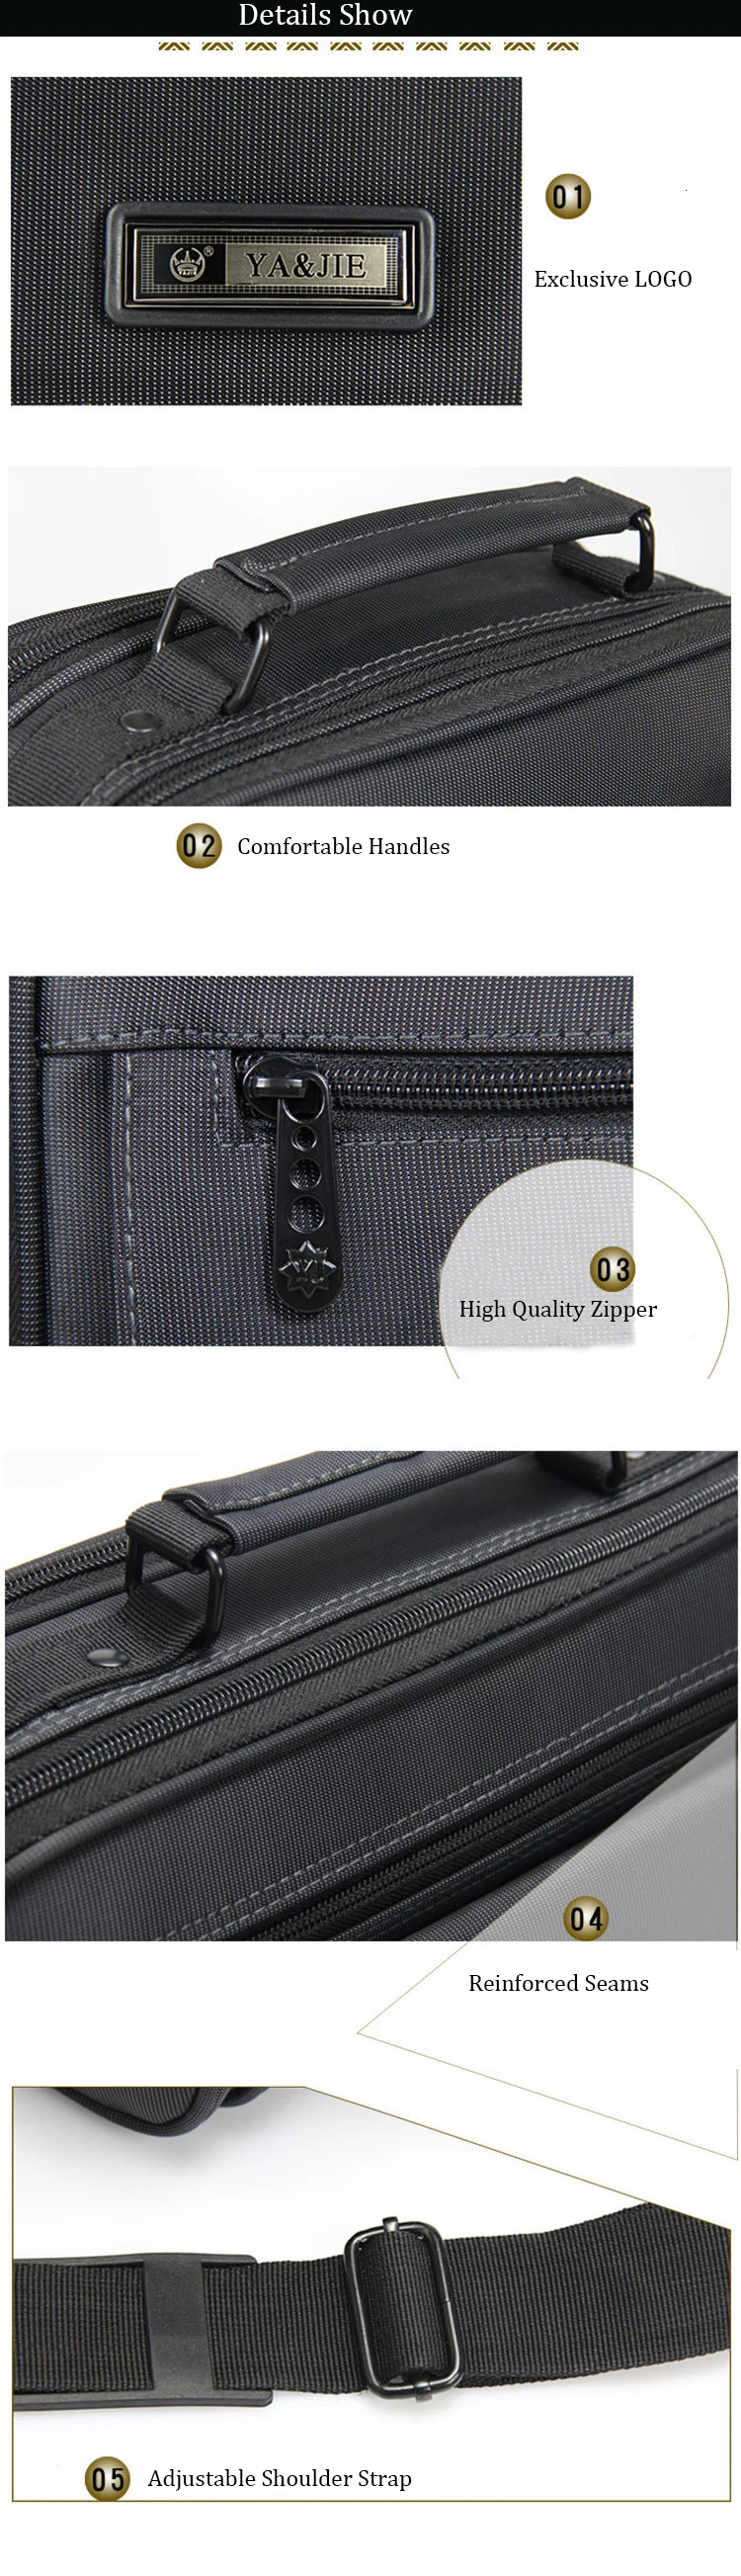 OYIXINGER 2019 новые портфели различных размеров Мужская сумка для ноутбука Высокое качество водонепроницаемый Оксфорд мужская деловая